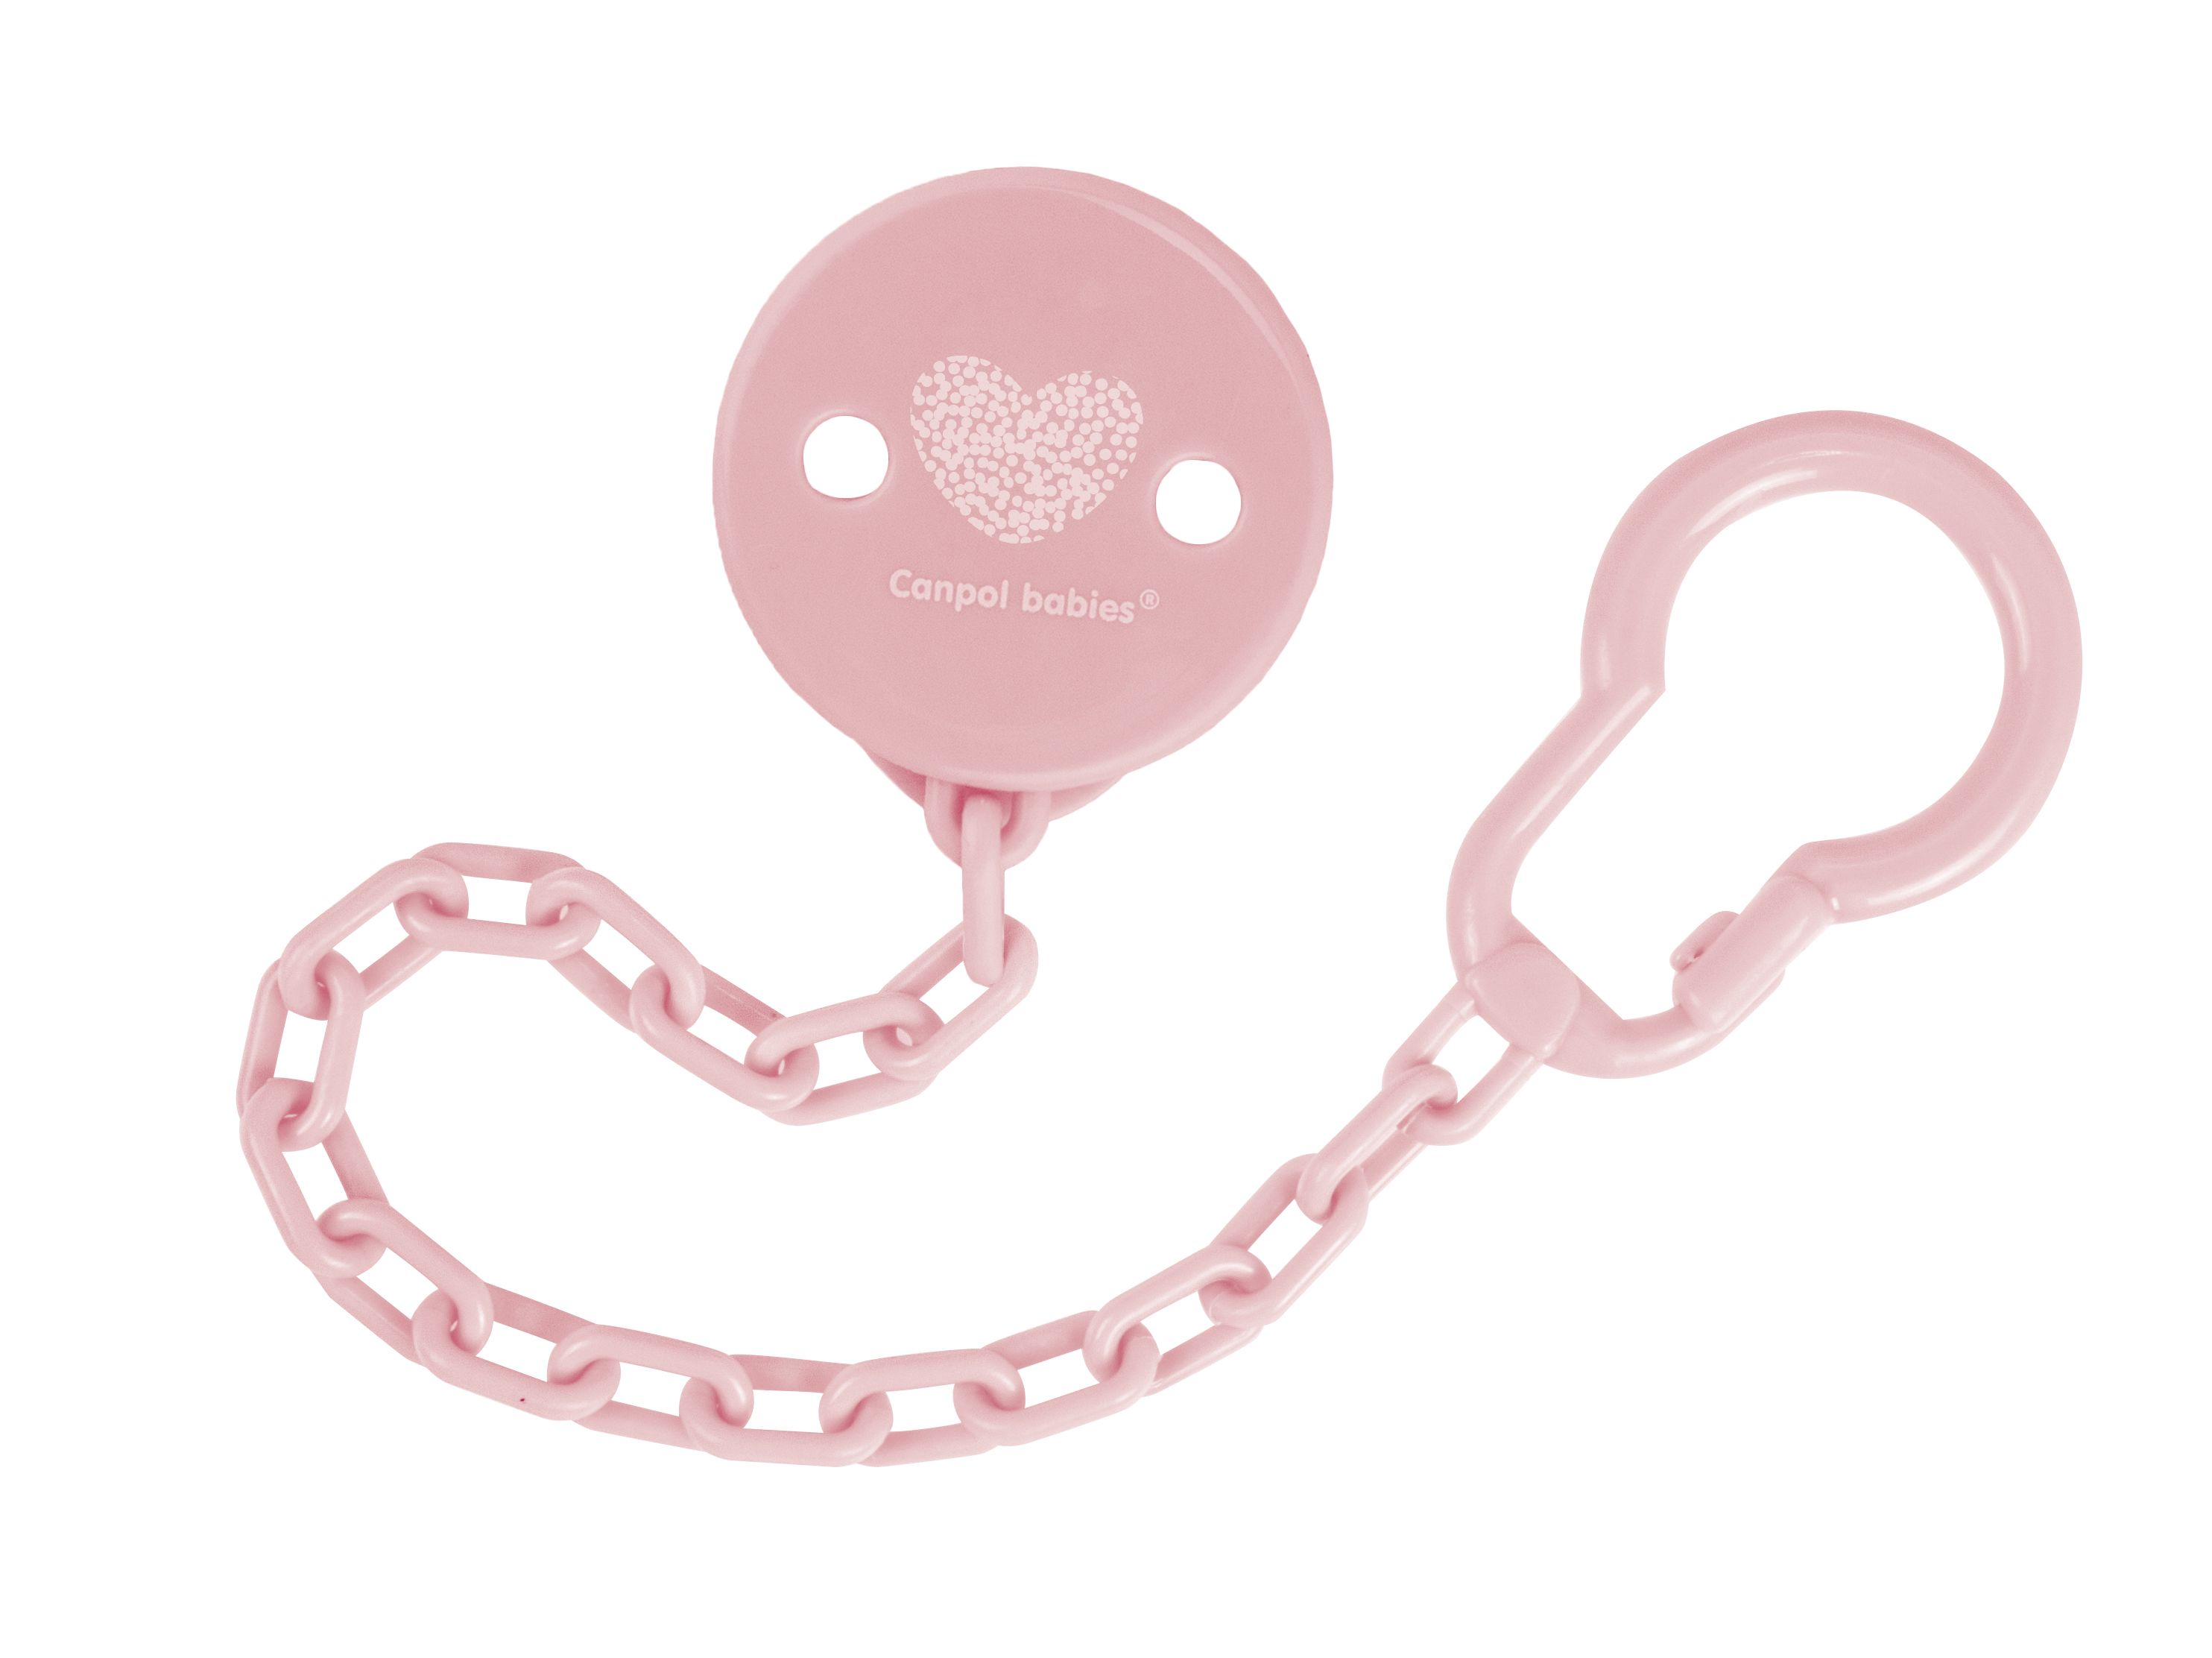 Цепочка для пустышки Canpol babies Pastelove, розовый (10/890) - фото 1